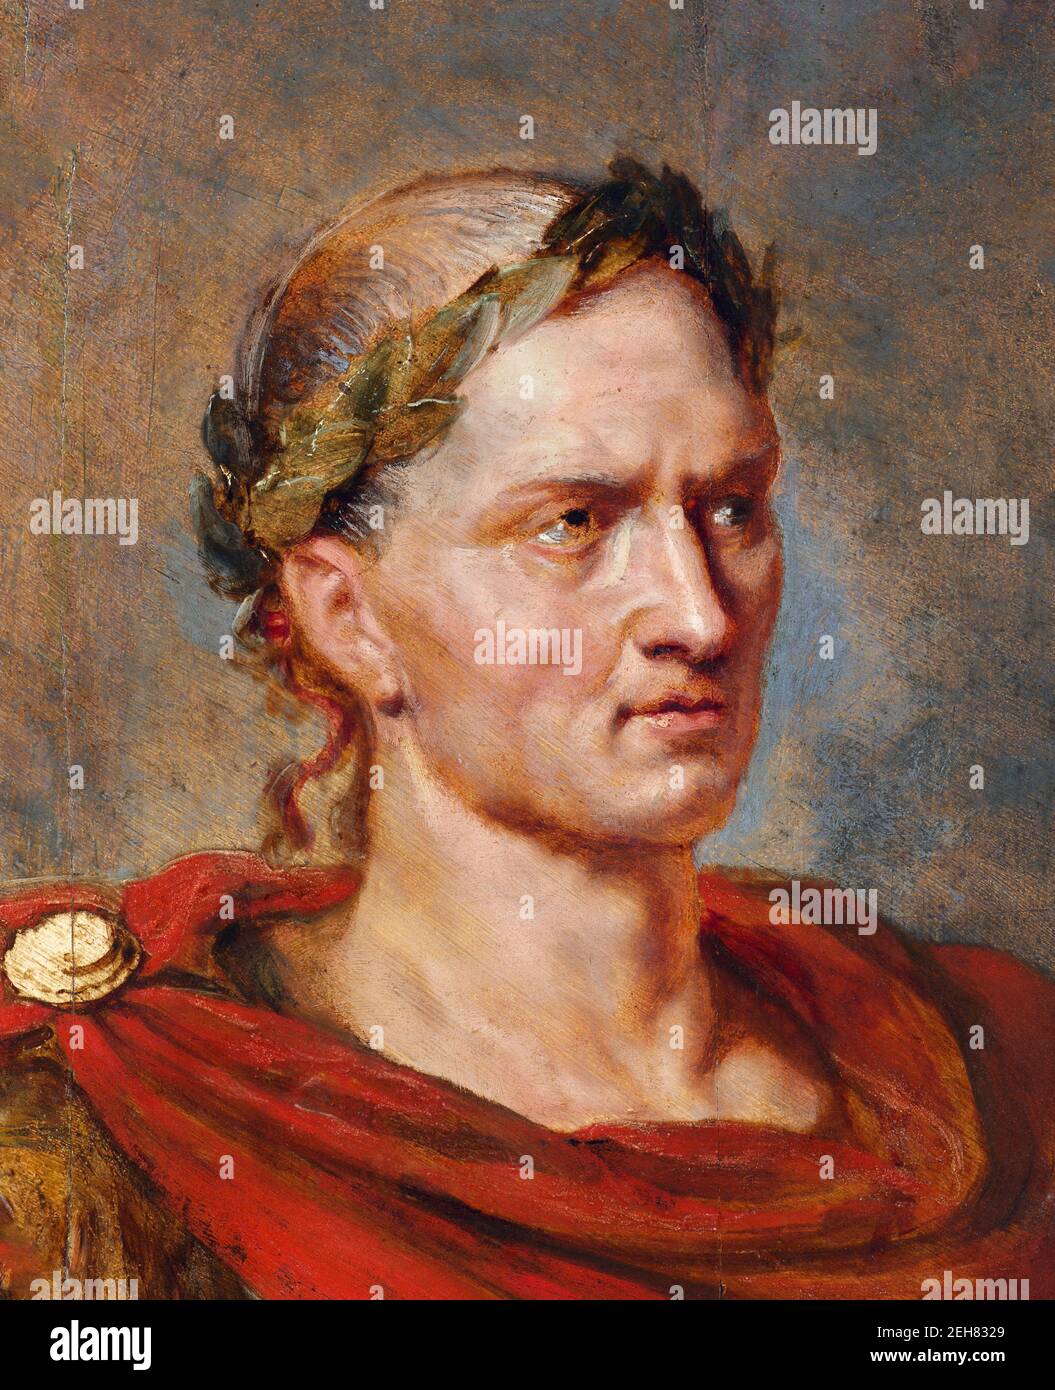 Giulio Cesare. Ritratto del dittatore romano Giulio Cesare (100 a.C. - 44 a.C.) di Peter Paul Rubens, olio su tavola, c.1625/6 Foto Stock